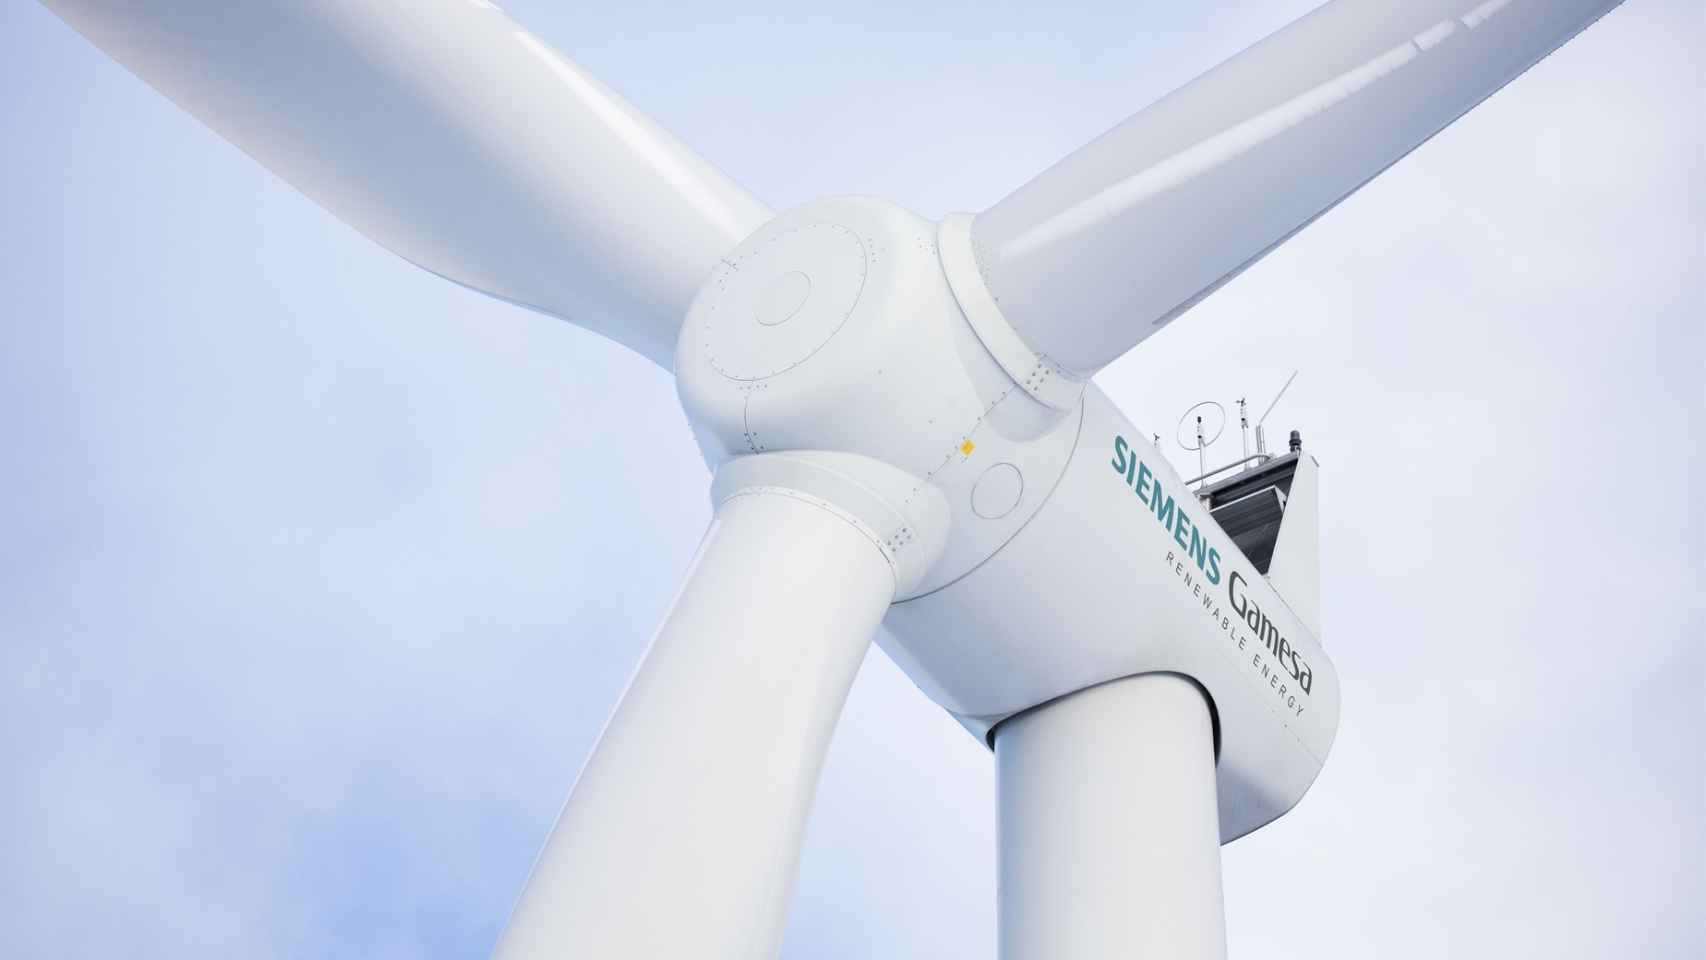 Instalaciones de Siemens Gamesa para producir energía eólica.